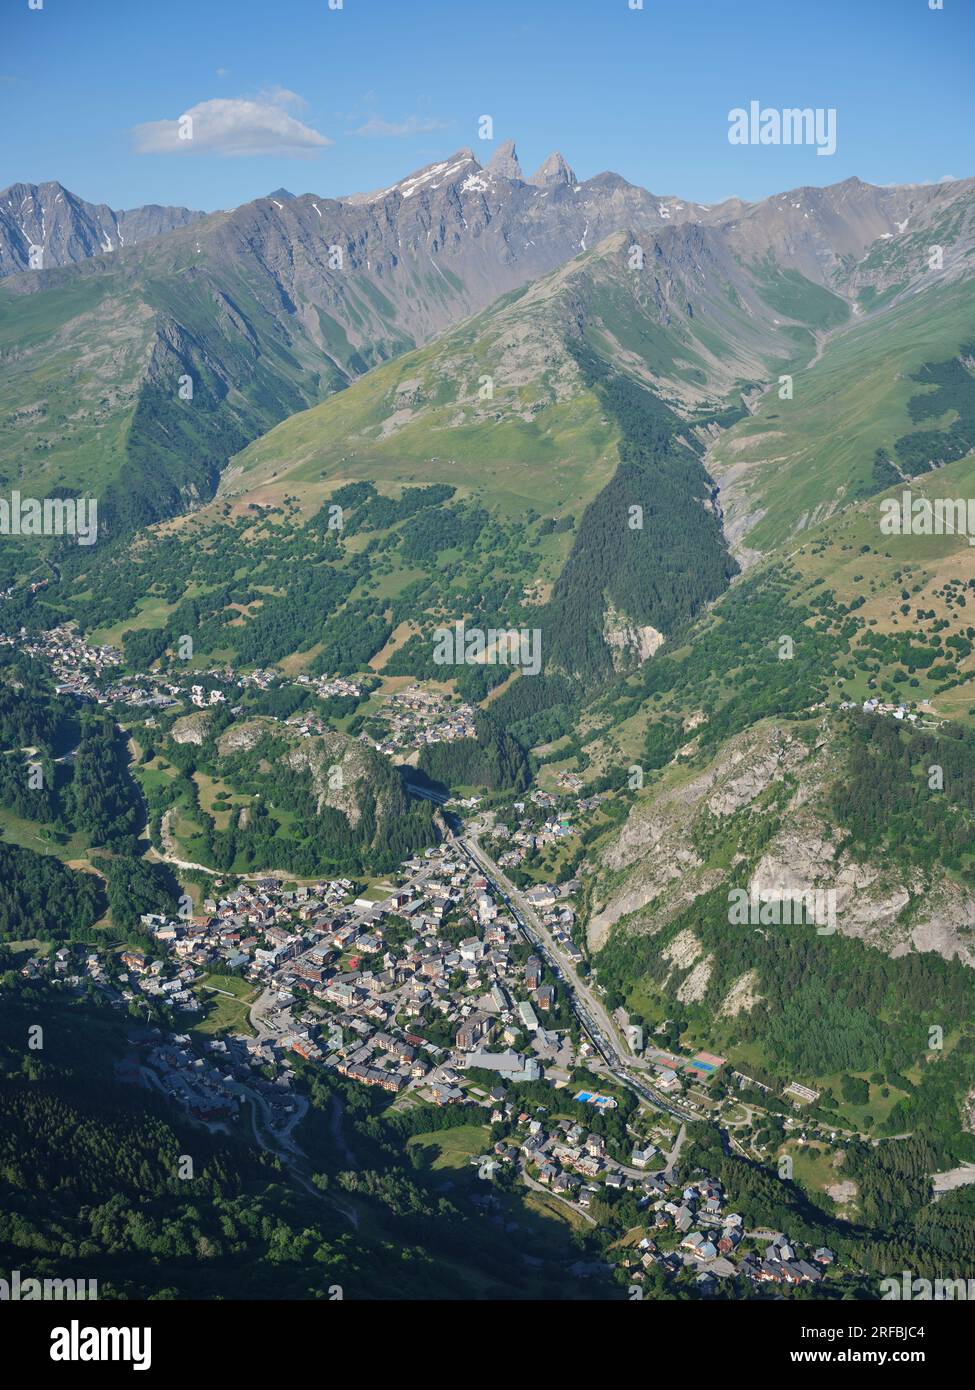 LUFTAUFNAHME. Die Stadt Valloire mit den drei aiguilles d'arves in der Ferne. Savoie, Auvergne-Rhône-Alpes, Frankreich. Stockfoto